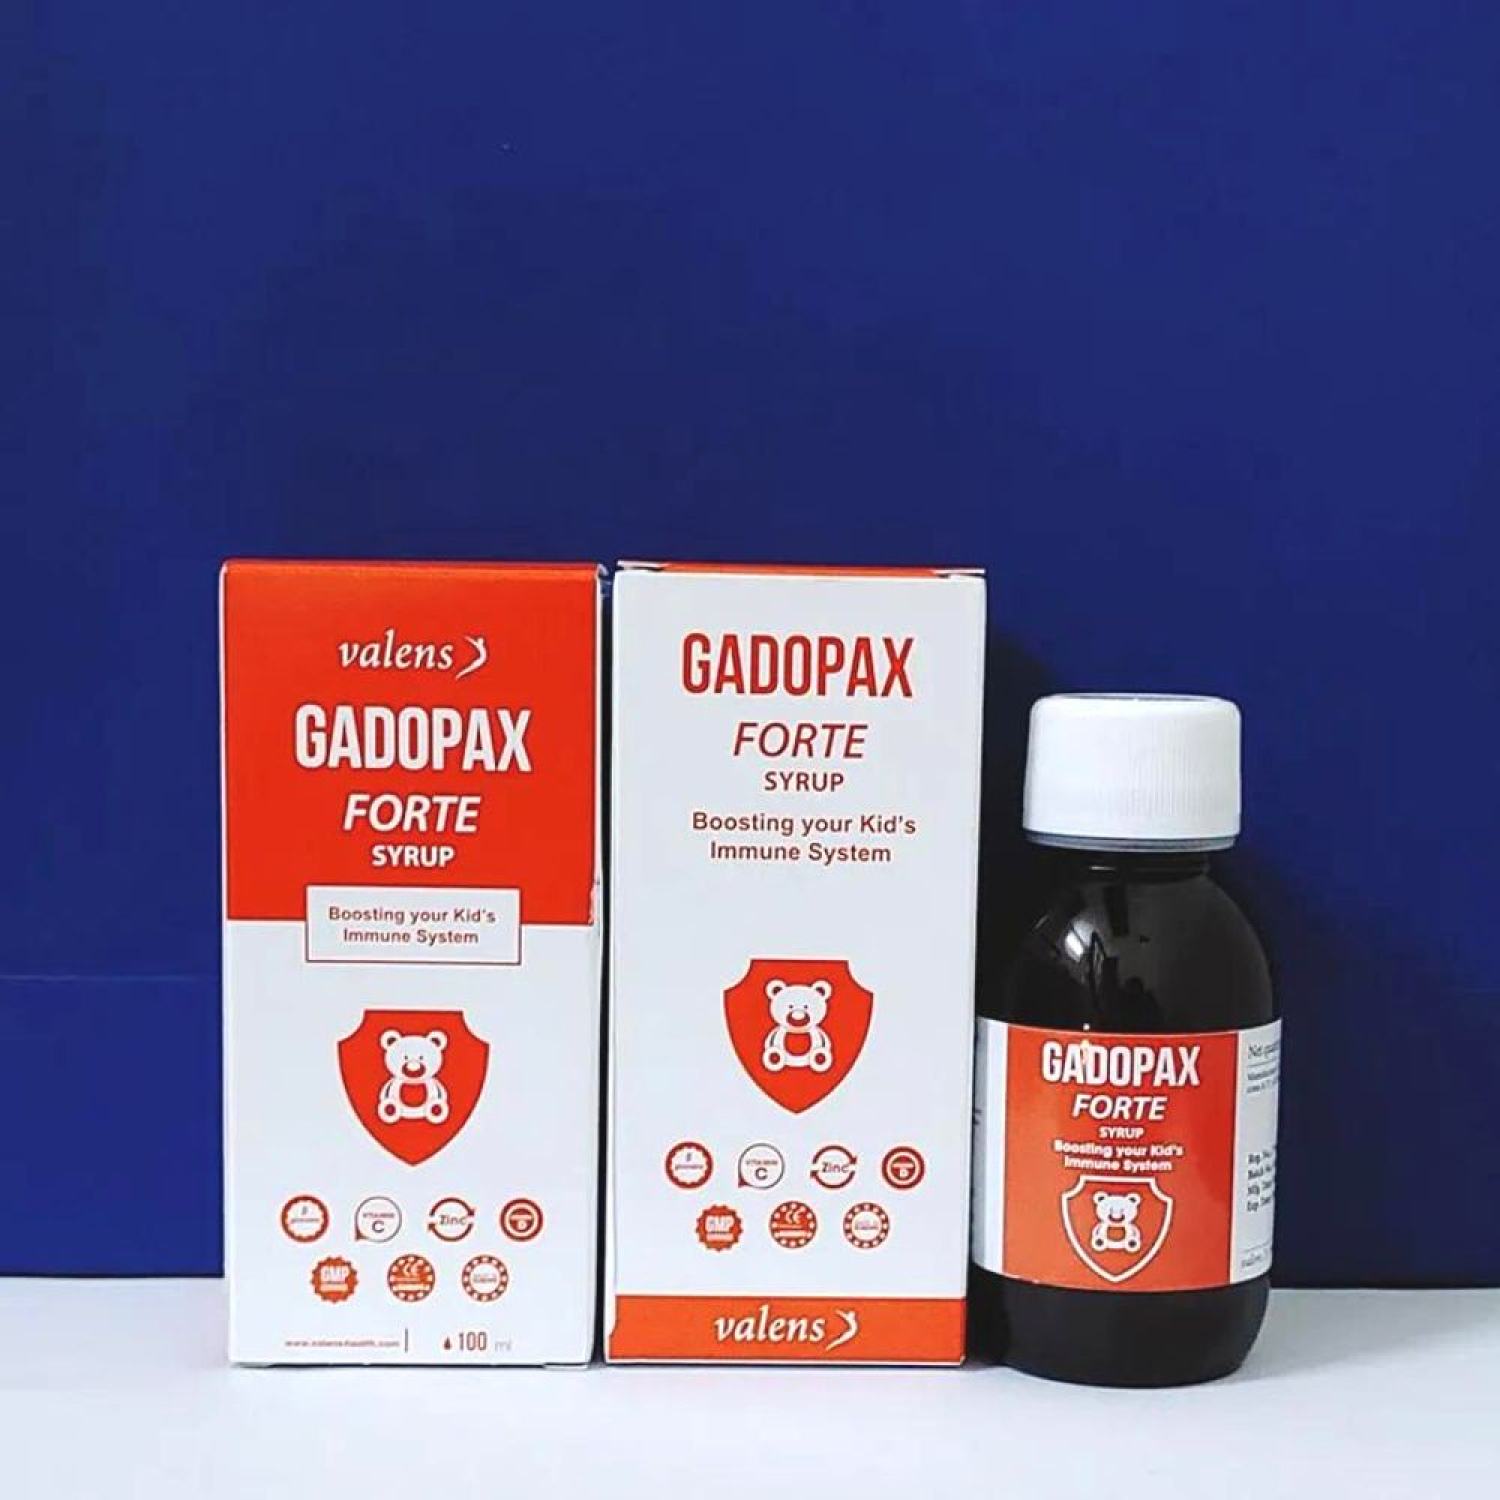 Gadopax fᴏrte - Hỗ trợ tăng cường sức đề kháng của cơ thể- chai 100ml-